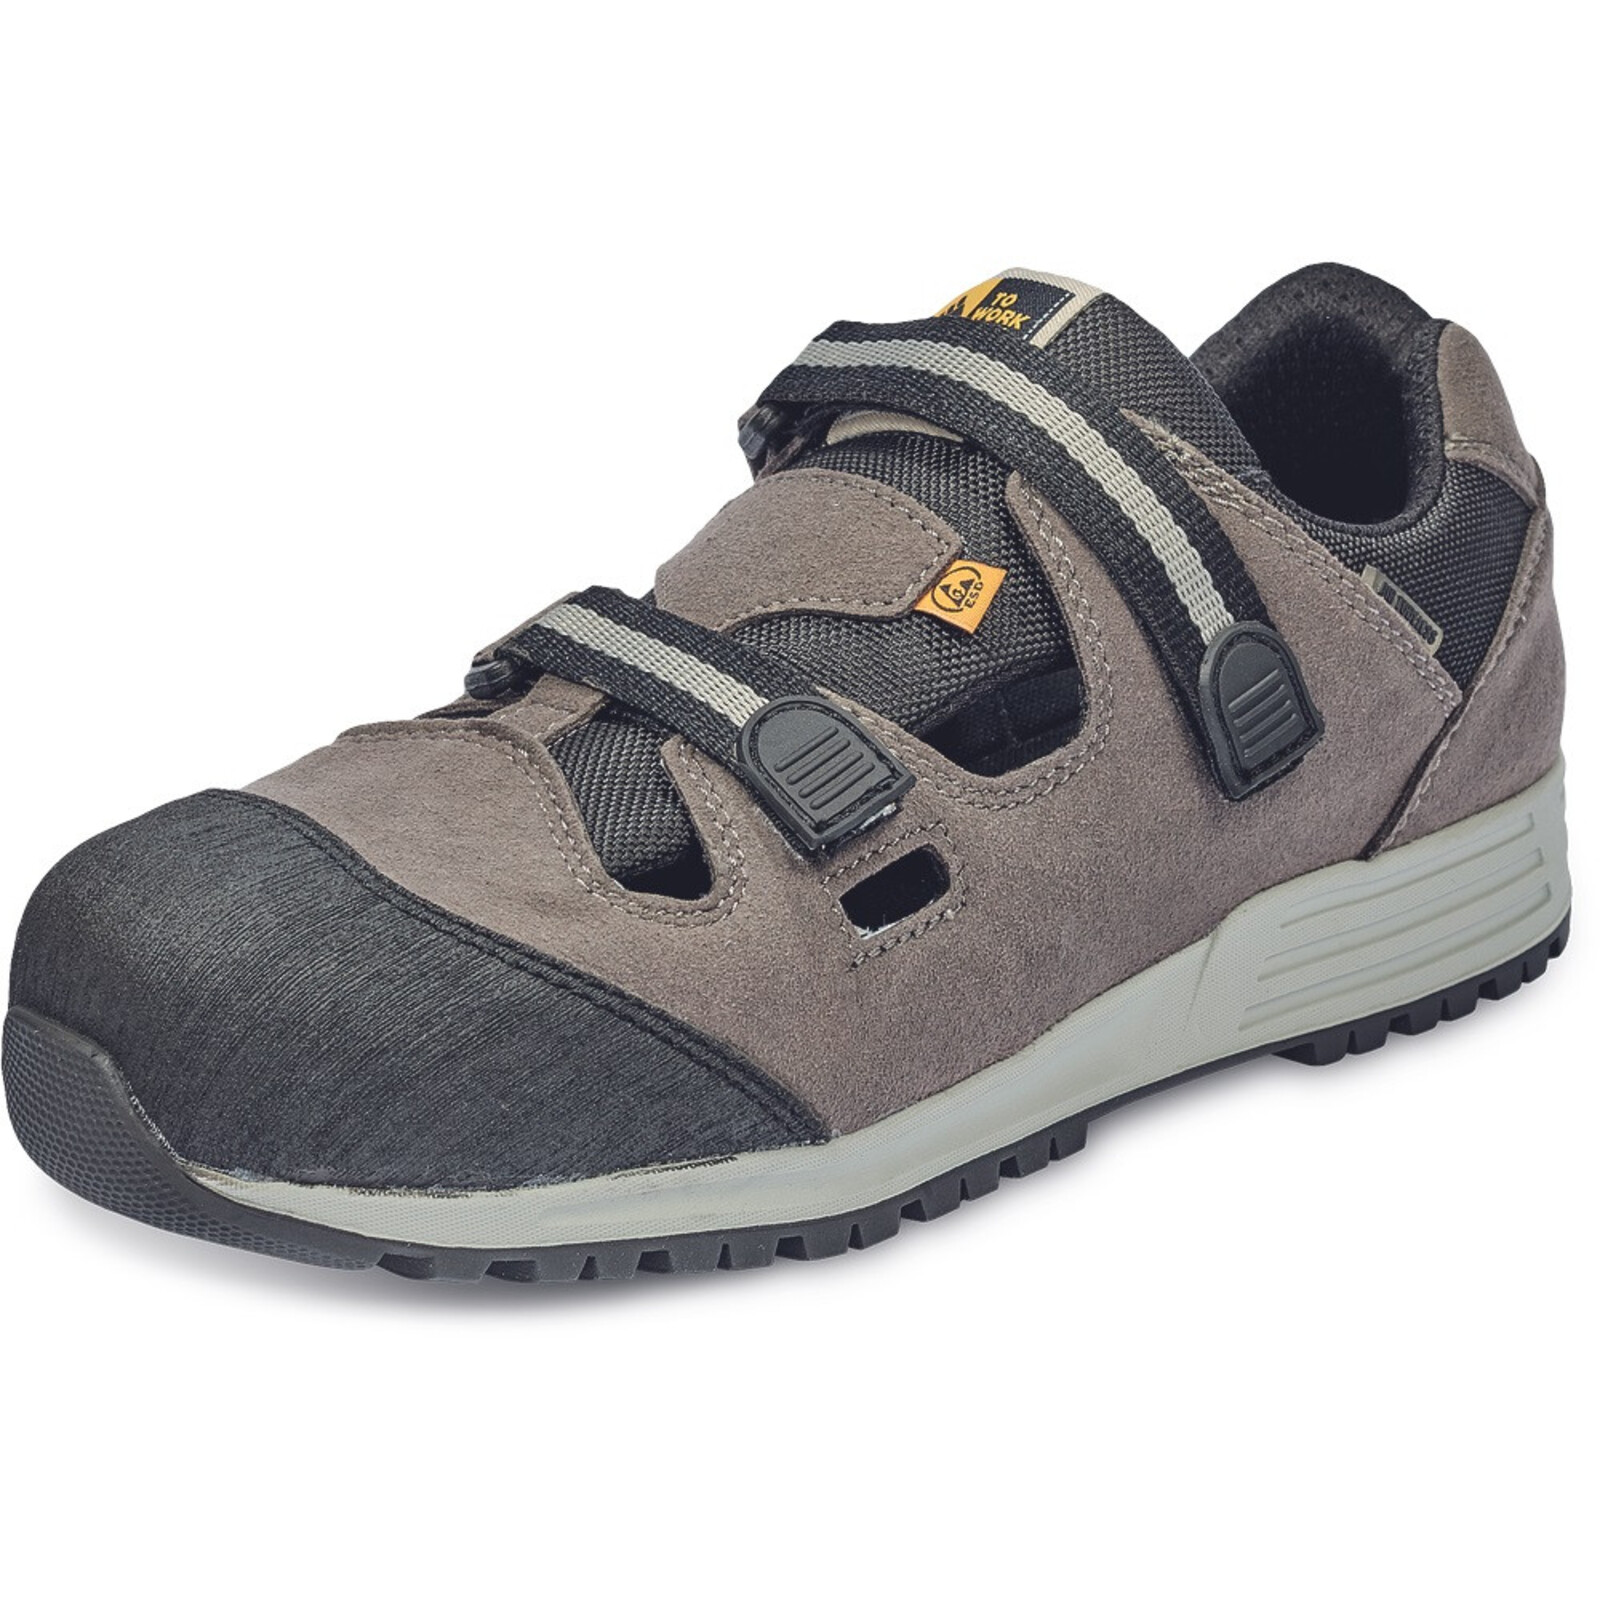 Bezpečnostné sandále To Work For Runner ESD S1P SRC - veľkosť: 40, farba: sivá/čierna